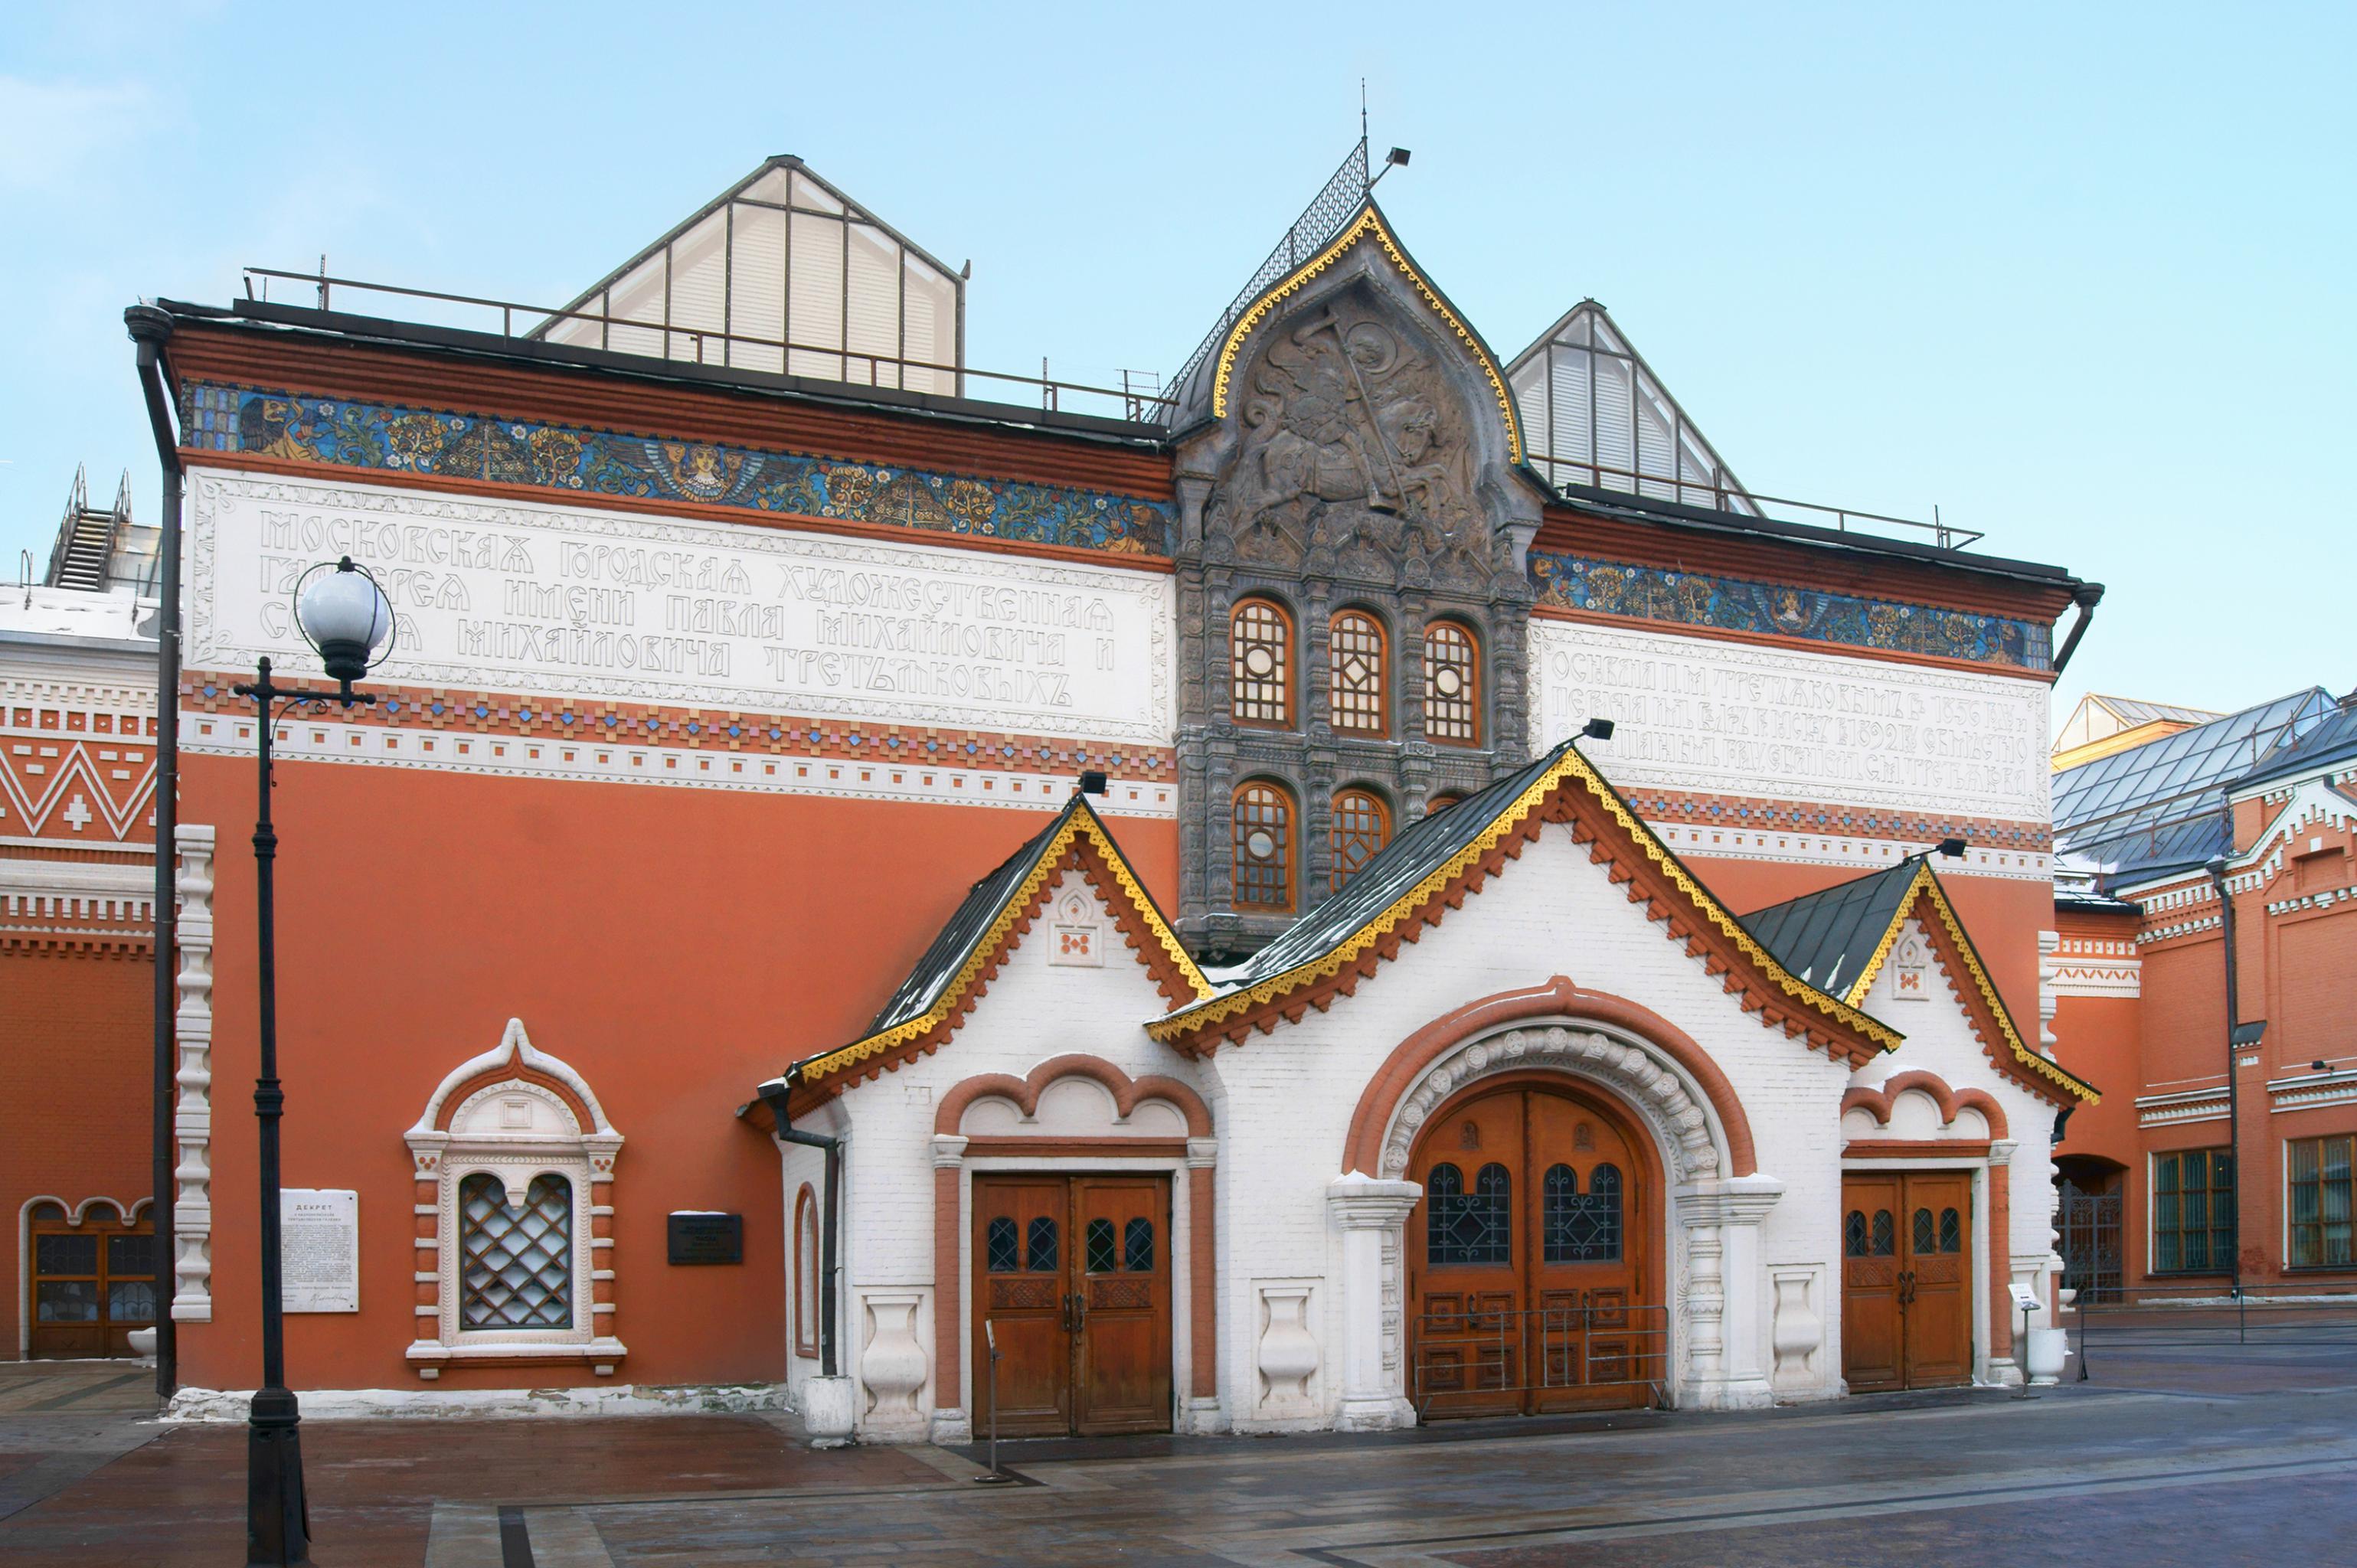 Фасад главного здания Третьяковской галереи в Лаврушинском переулке